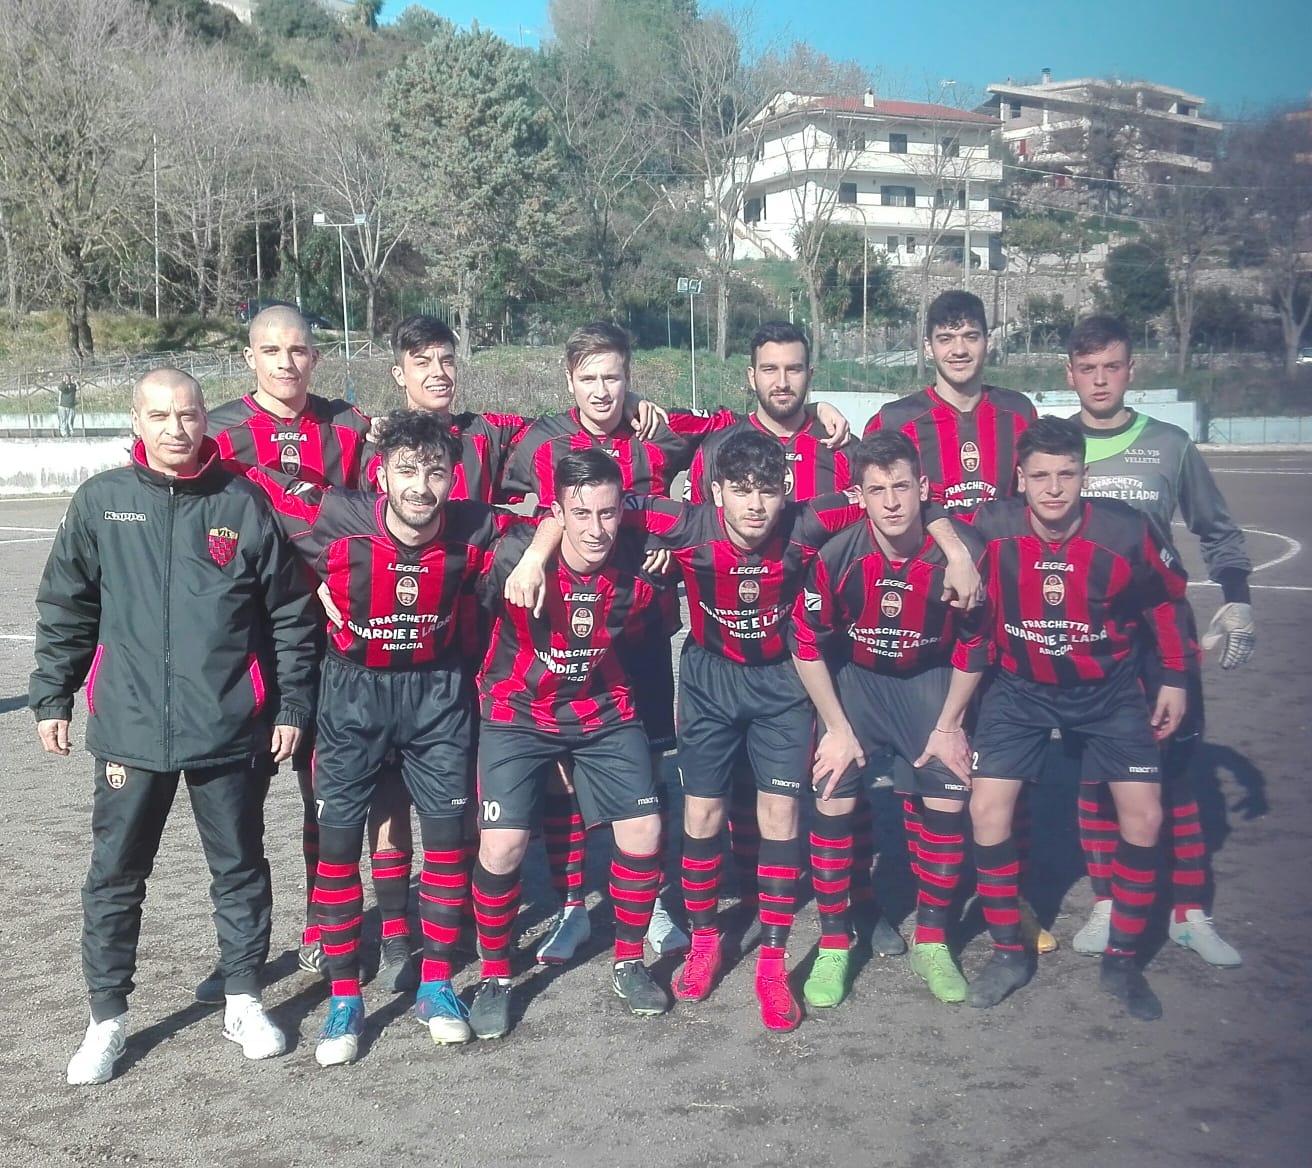 Juniores Under 19 | Vjs Velletri-Suio Terme Castelforte 2-1, la cronaca